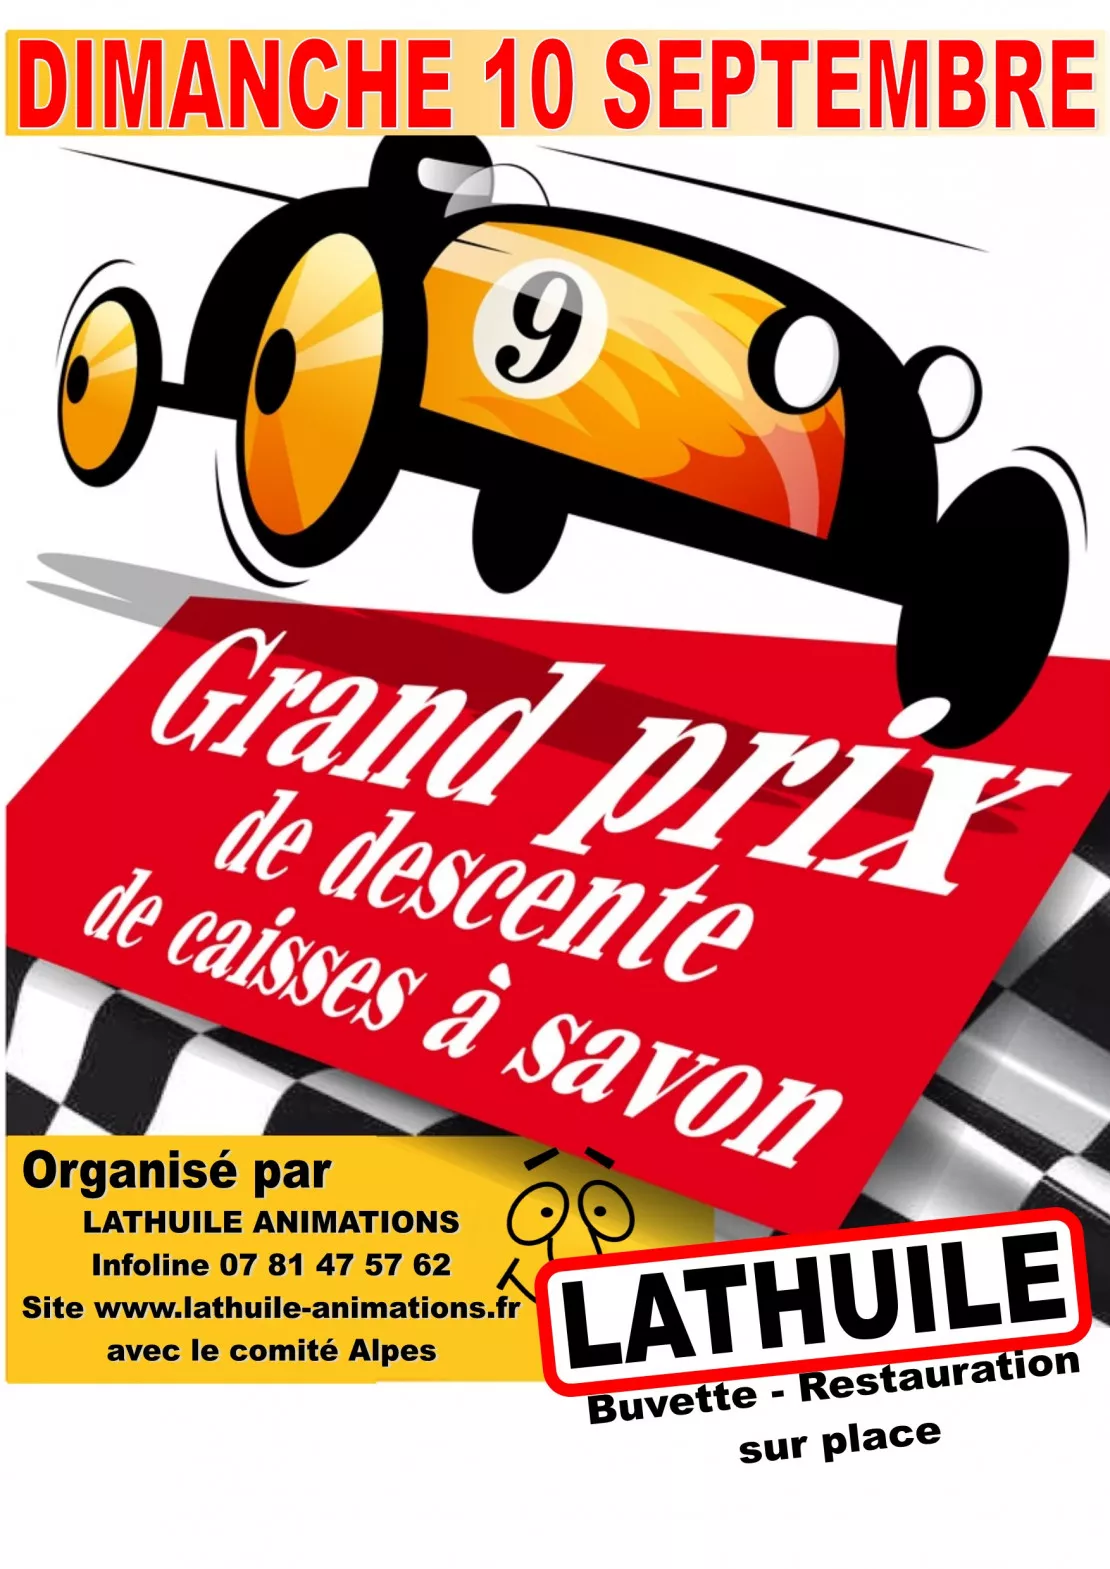 PARTENAIRE : Inscriptions pour la course des Caisses à Savon à Lathuile